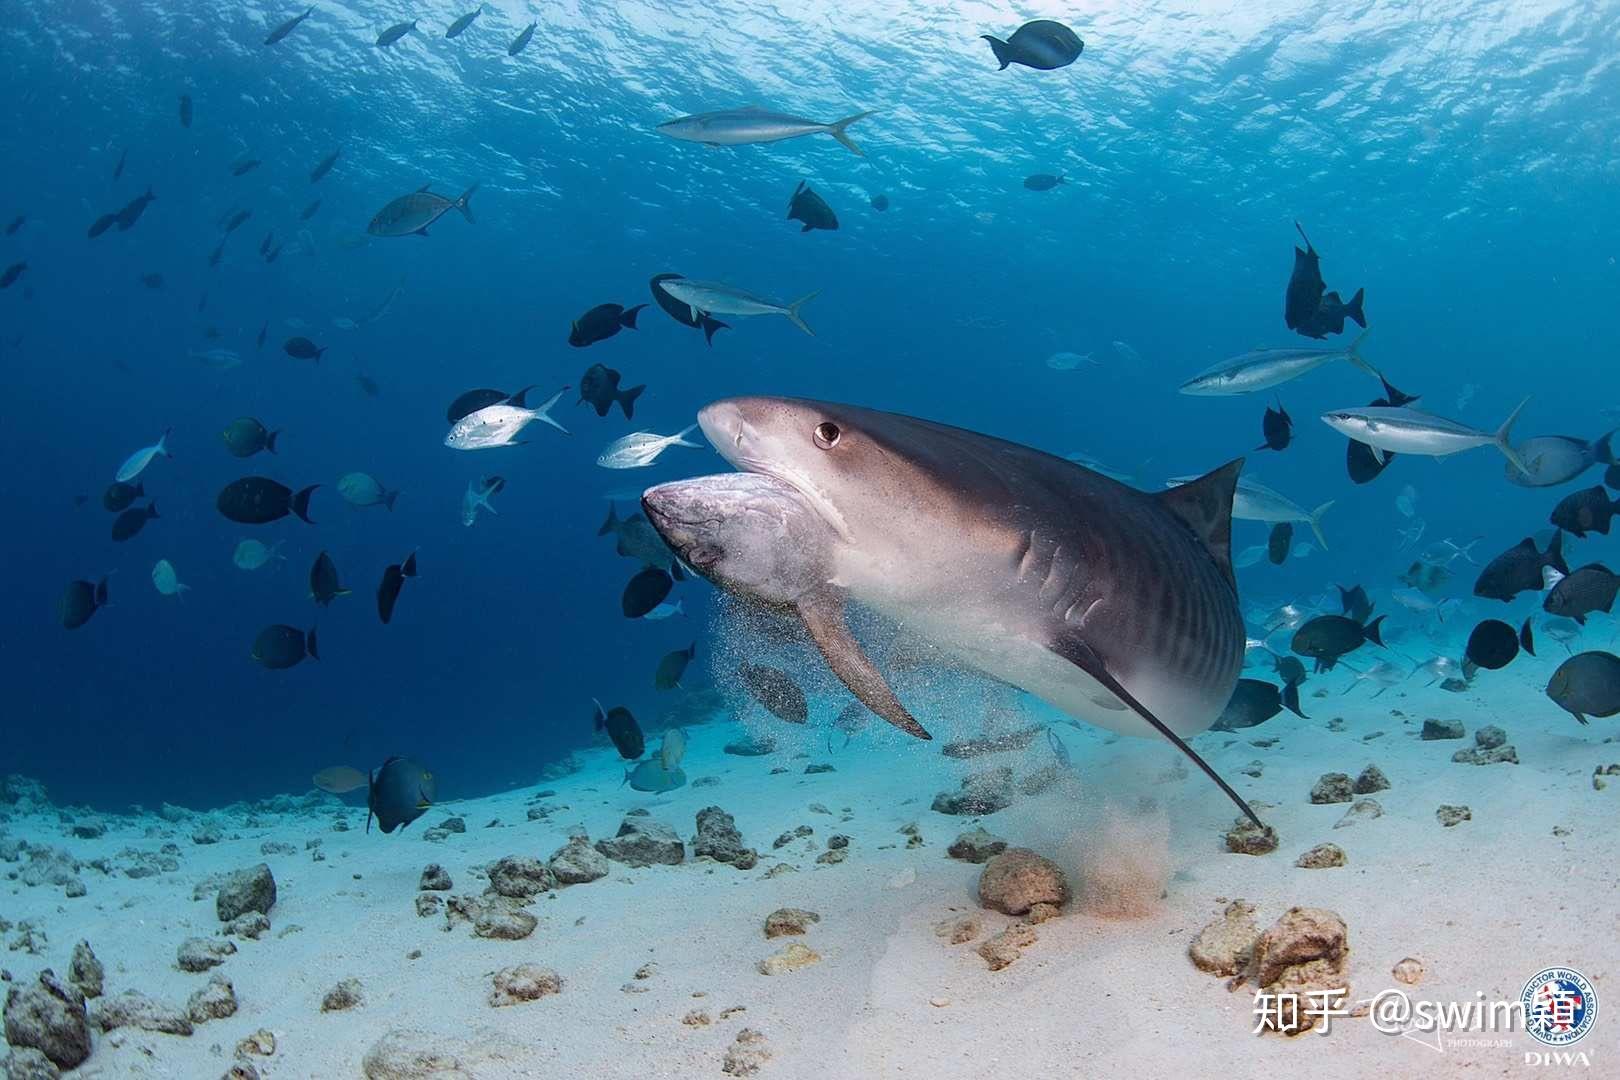 超帅虎鲨在鱼群图片大全-动物图片